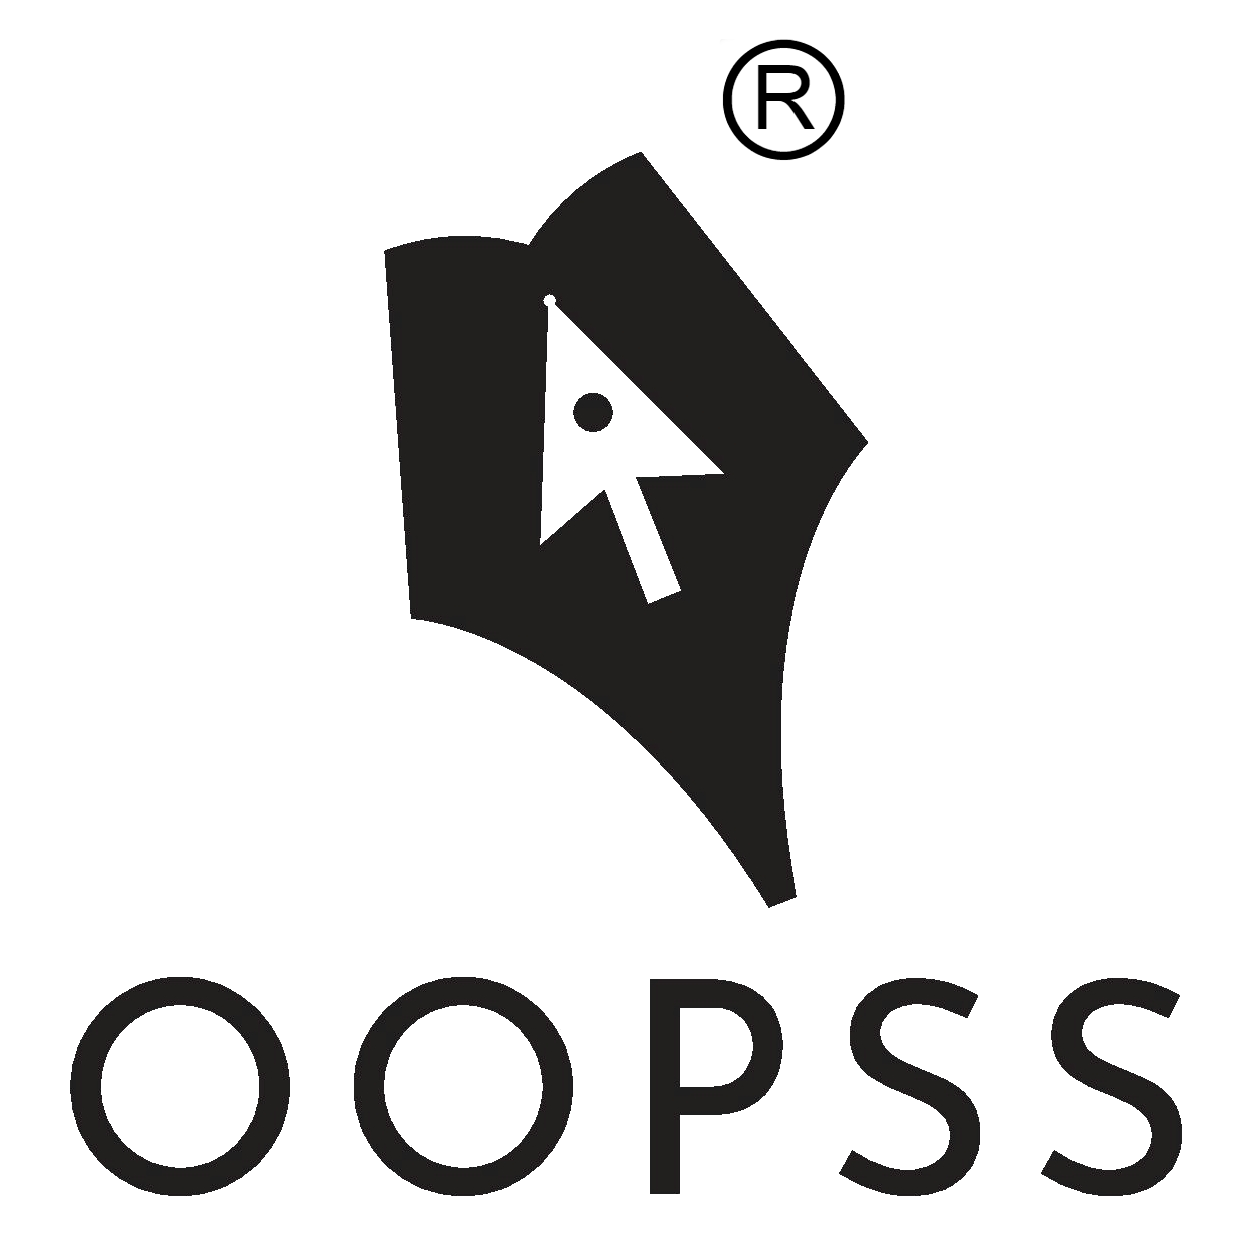 OOPSS-logo-1x1-R-png